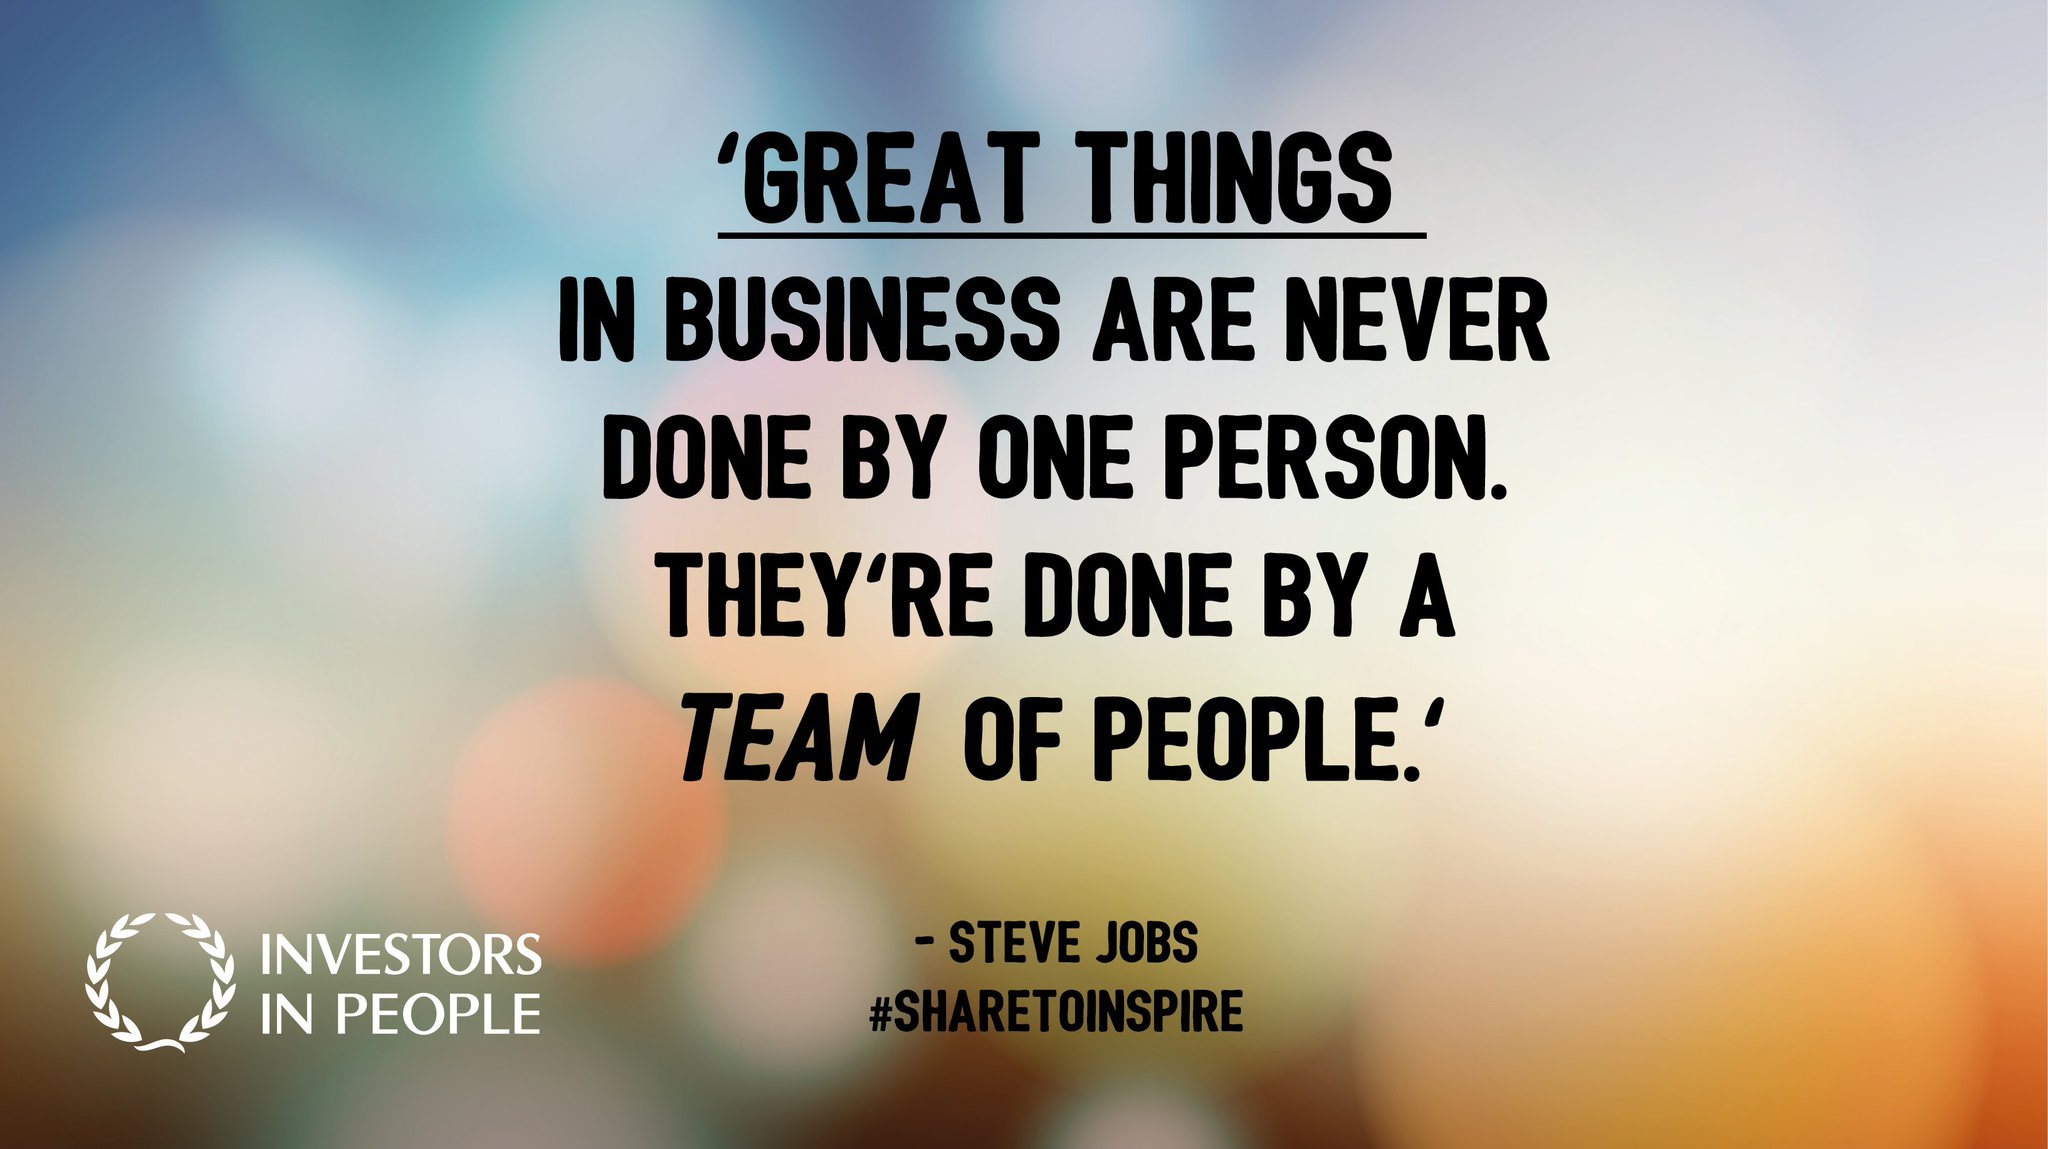 Steve Jobs #sharetoinspire” 